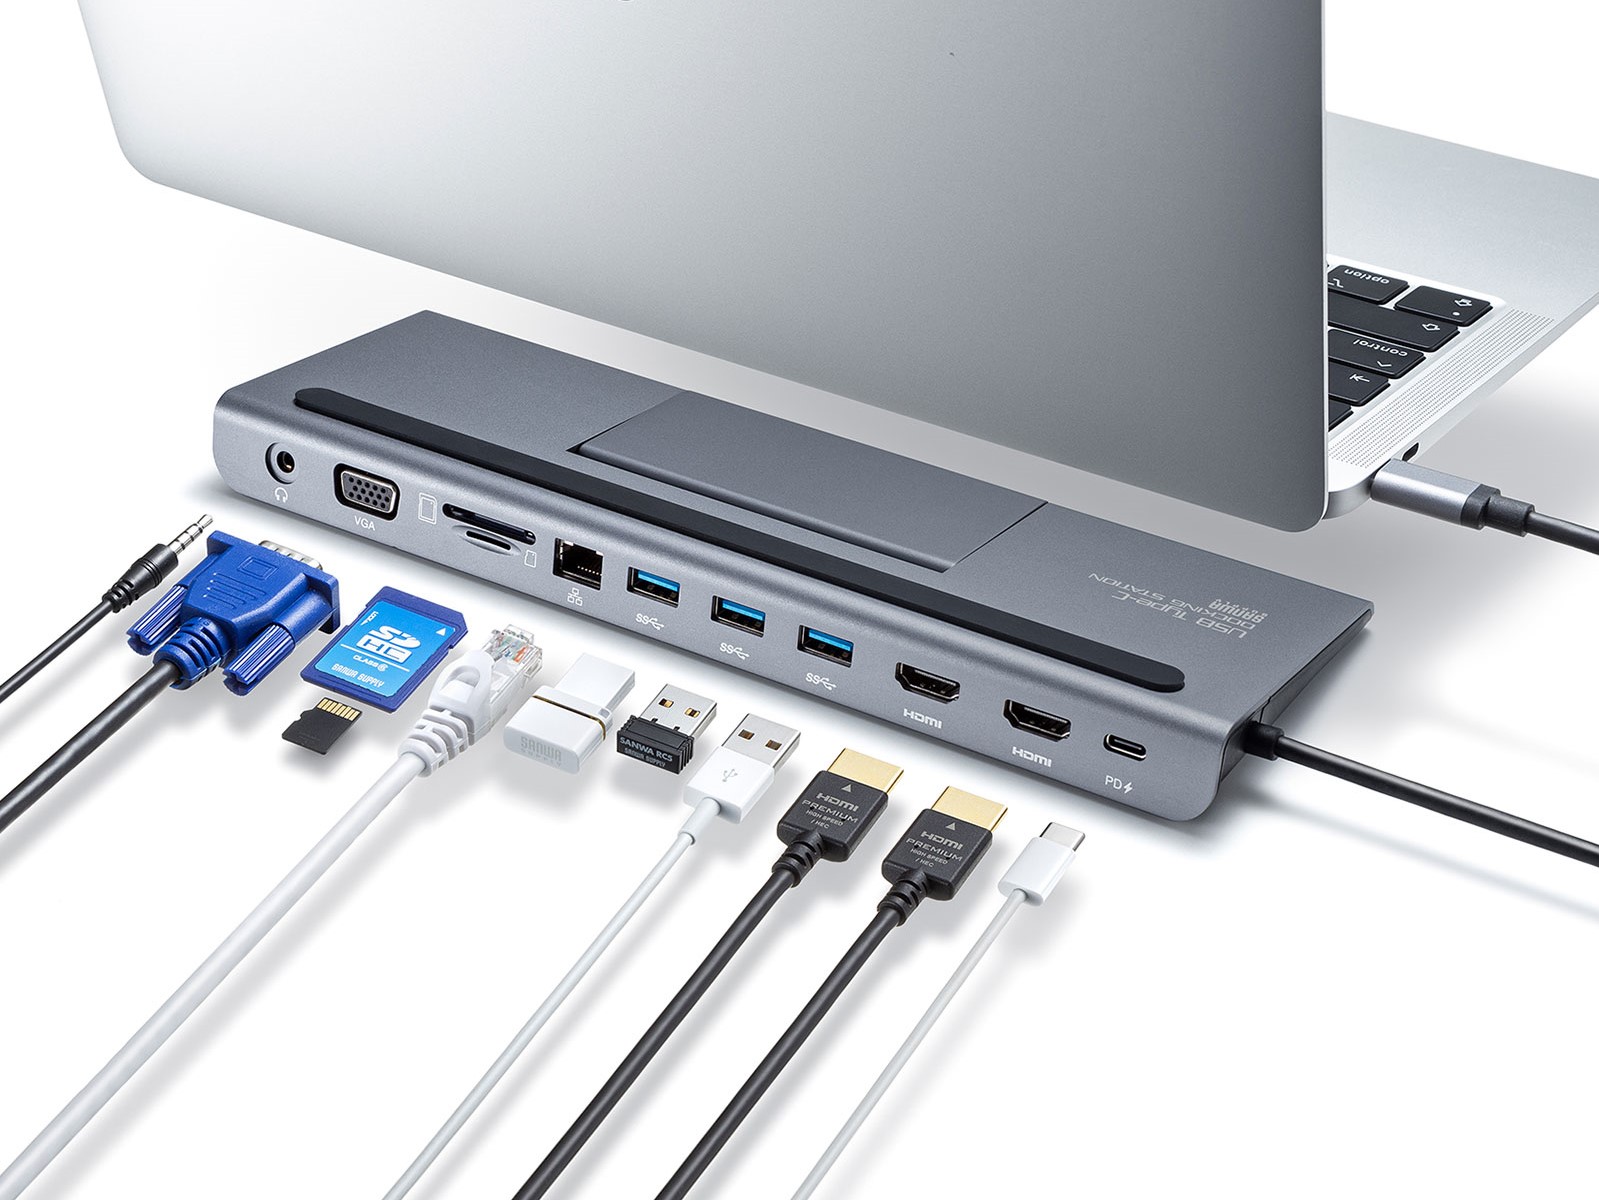 USB Type-Cケーブル1本で接続、HDMI/VGA/有線LAN/SDスロットなどを拡張できるドッキングステーションをサンワサプライが発売 -  INTERNET Watch